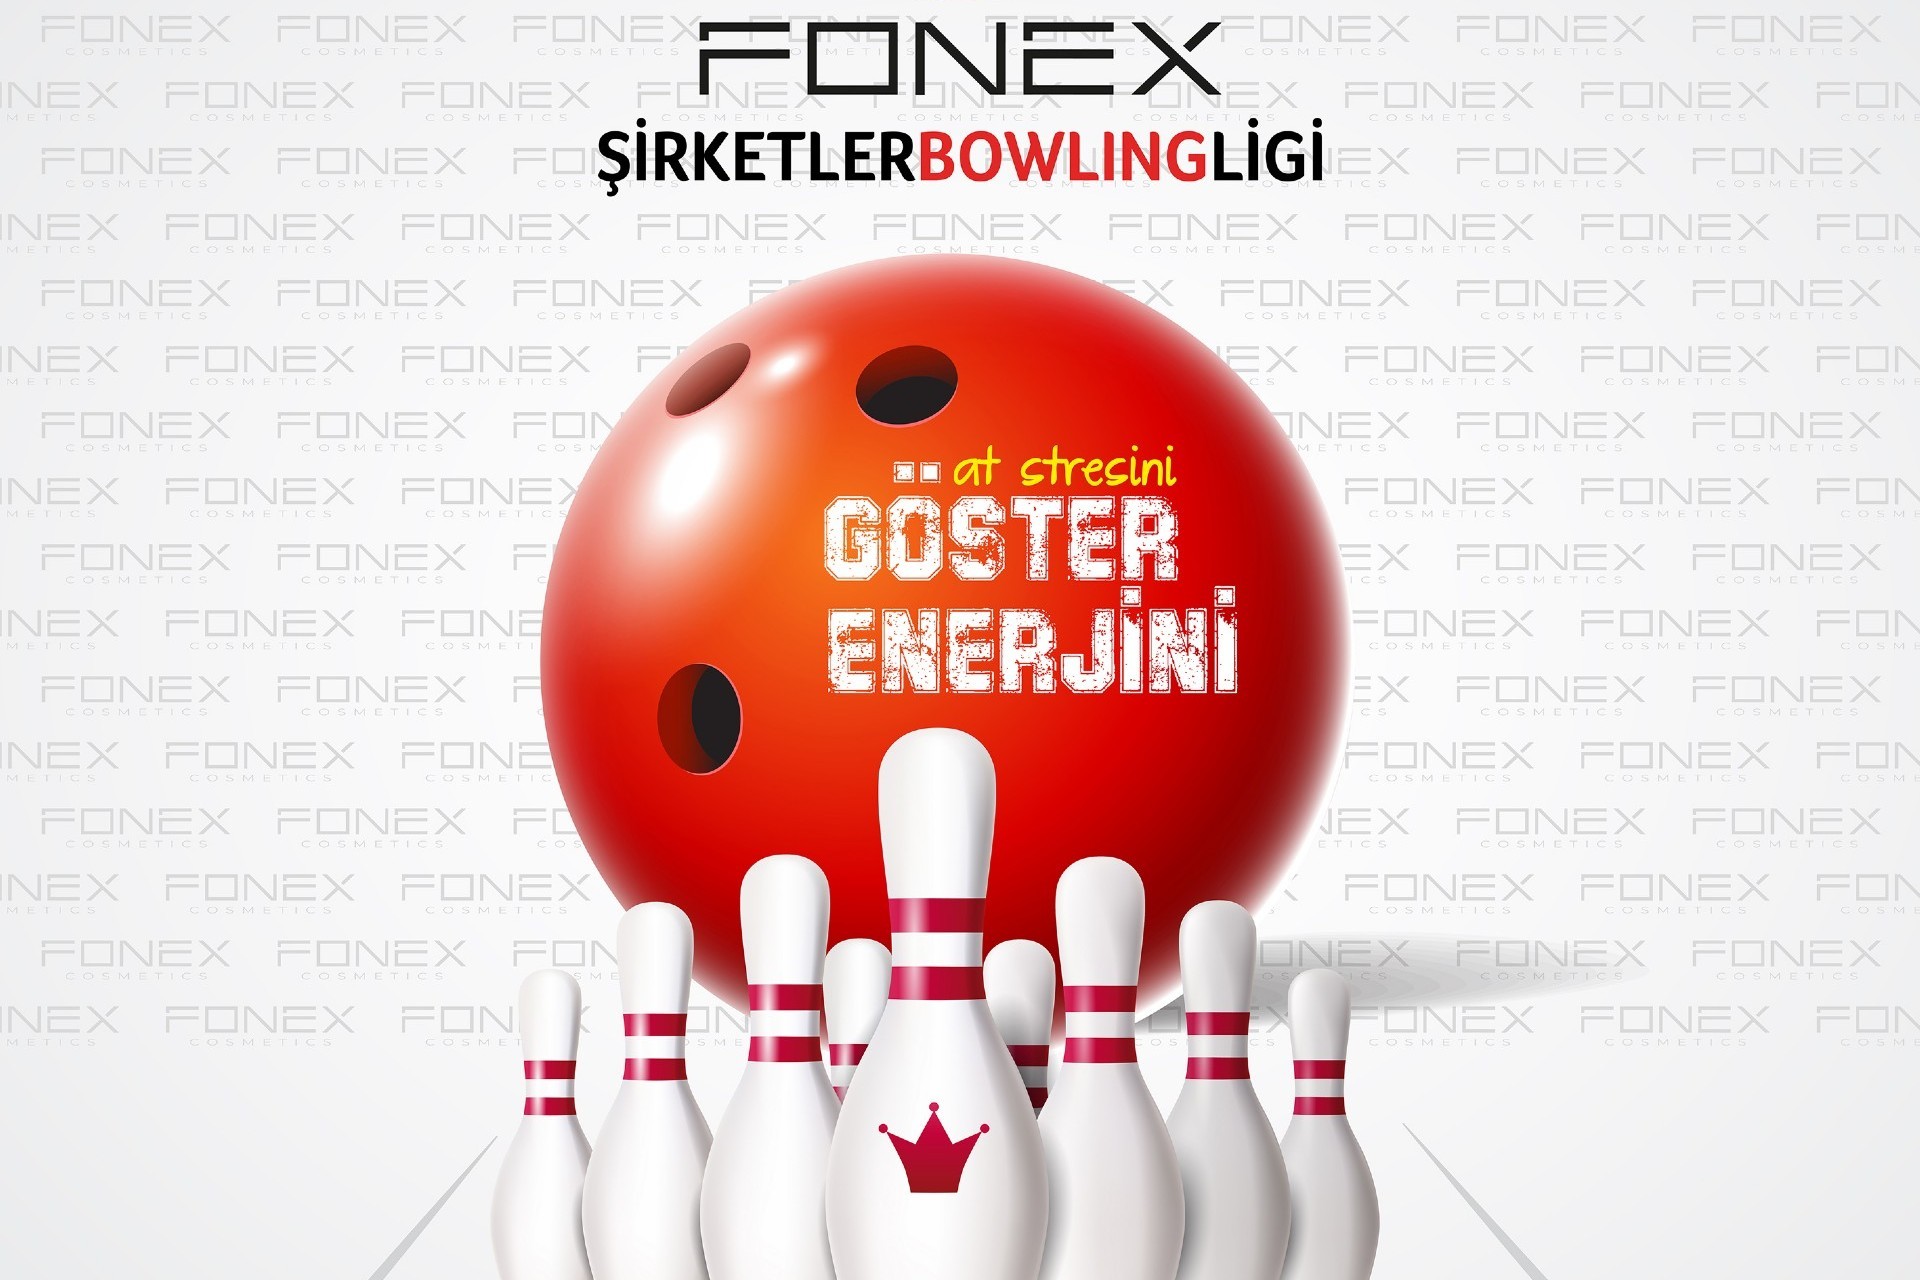 Fonex Şirketler Bowling Ligi Başlıyor !